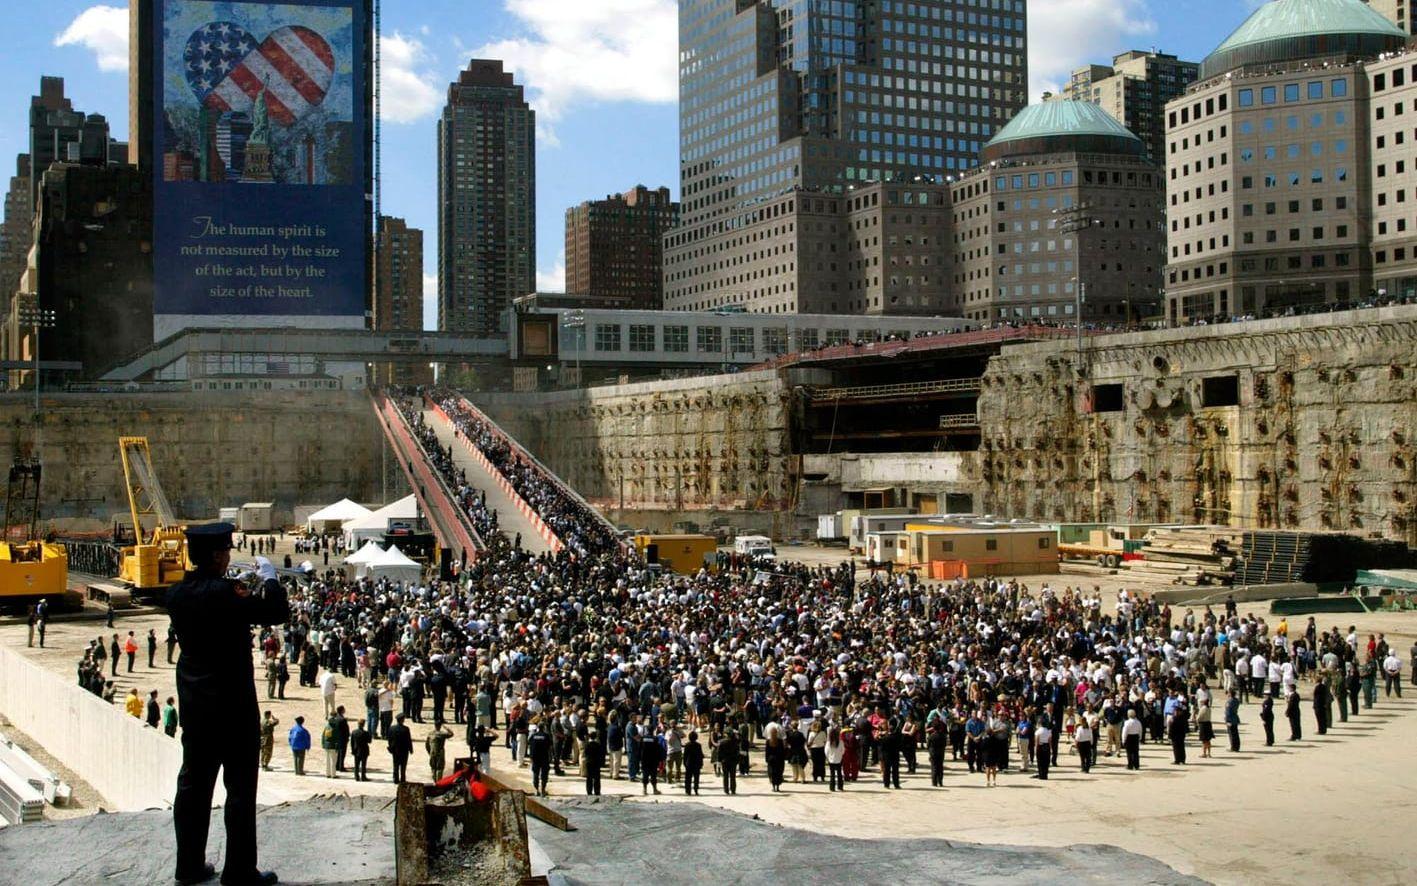 Exakt ett år efter attacken, den 11 september 2002, samlades tusentals personer för en officiell minnesstund vid Ground Zero. Räddnings– och återhämtningsarbetet på platsen tog flera månader och var klar först i maj samma år, men det var vid den tidpunkten ännu inte bestämt hur det färdiga minnesmonumentet skulle se ut. Foto: TT